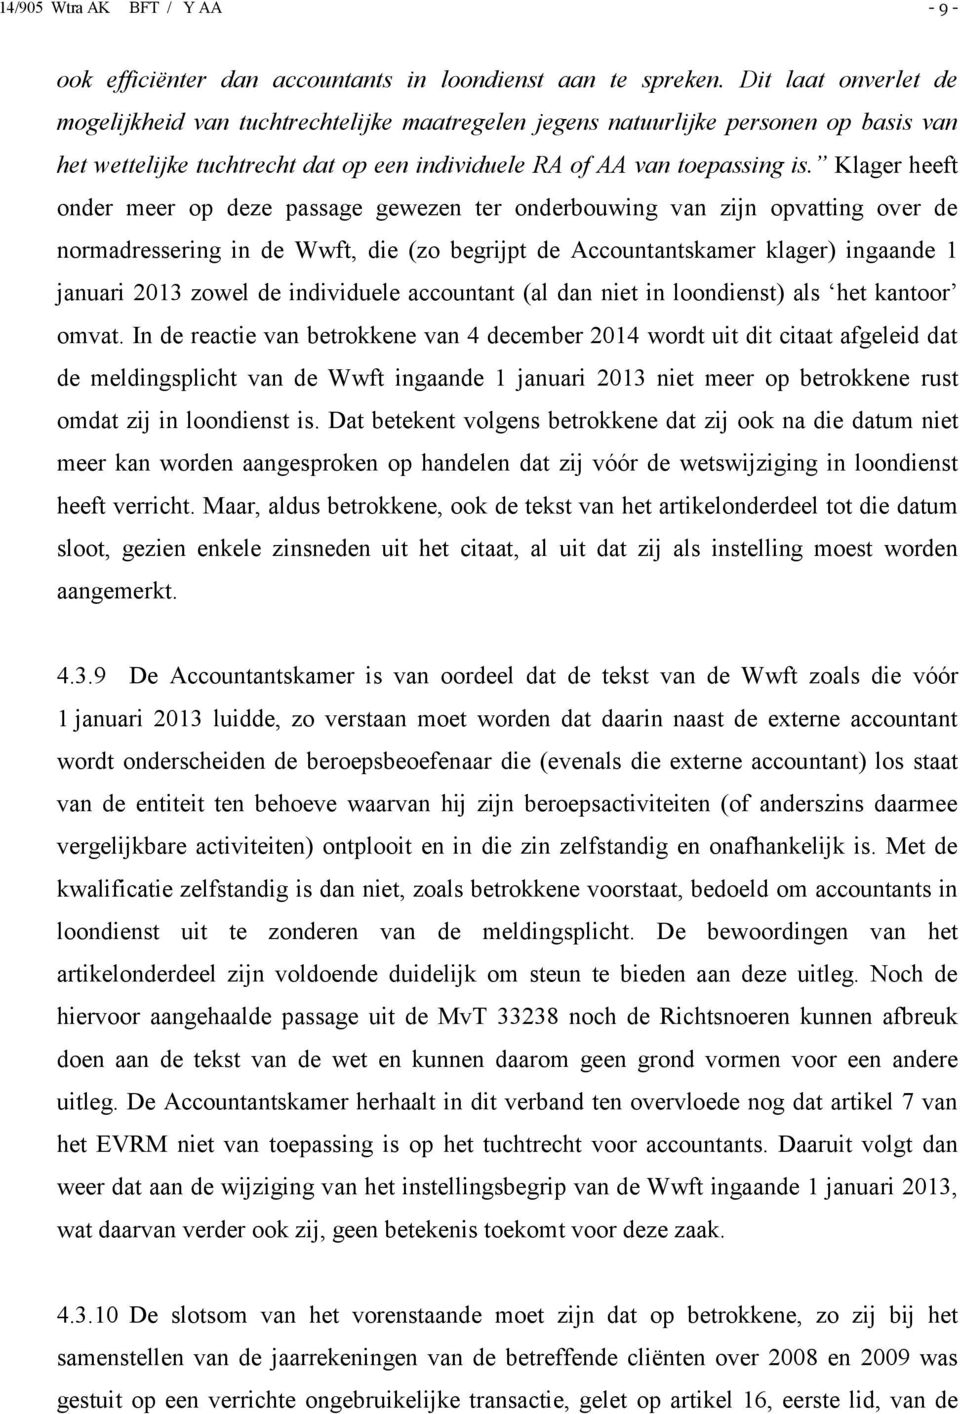 Klager heeft onder meer op deze passage gewezen ter onderbouwing van zijn opvatting over de normadressering in de Wwft, die (zo begrijpt de Accountantskamer klager) ingaande 1 januari 2013 zowel de